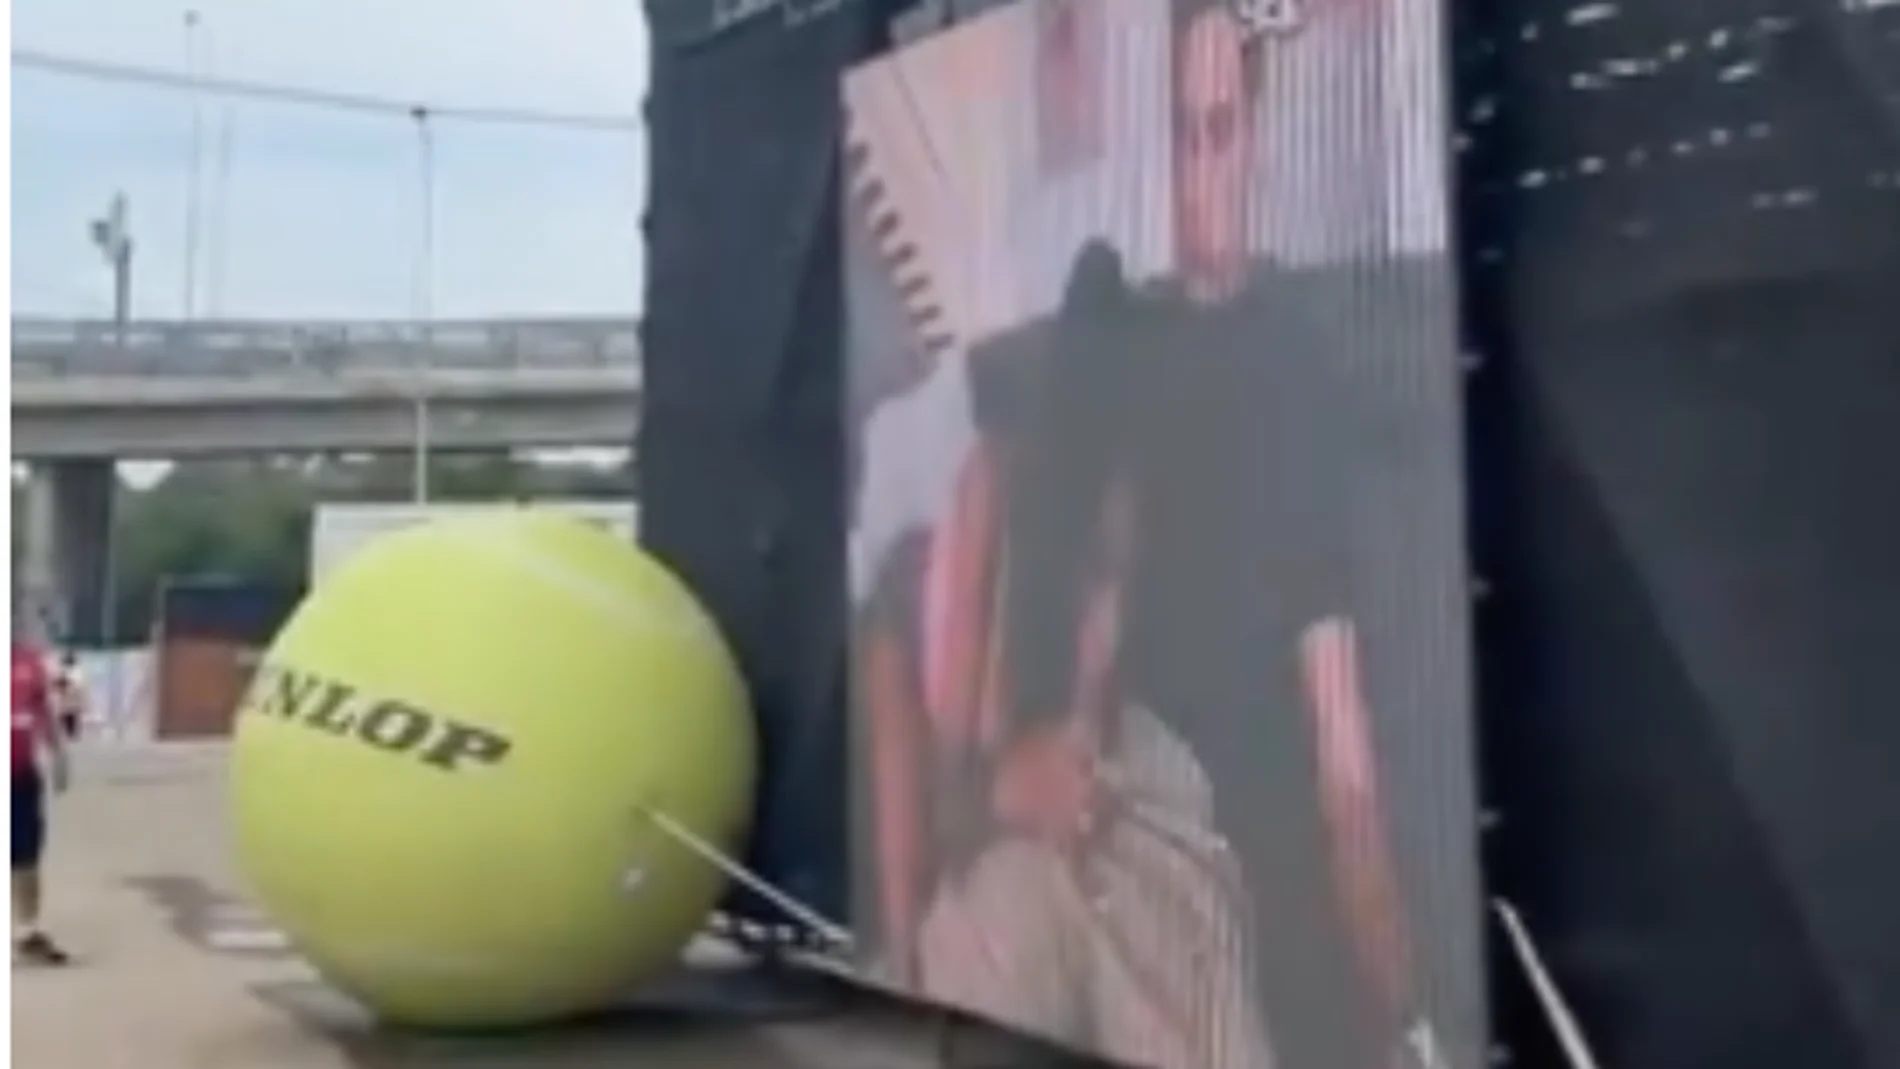 Proyectan una película porno en la pantalla gigante durante un torneo de tenis: "¡creo que eso no es una raqueta!"